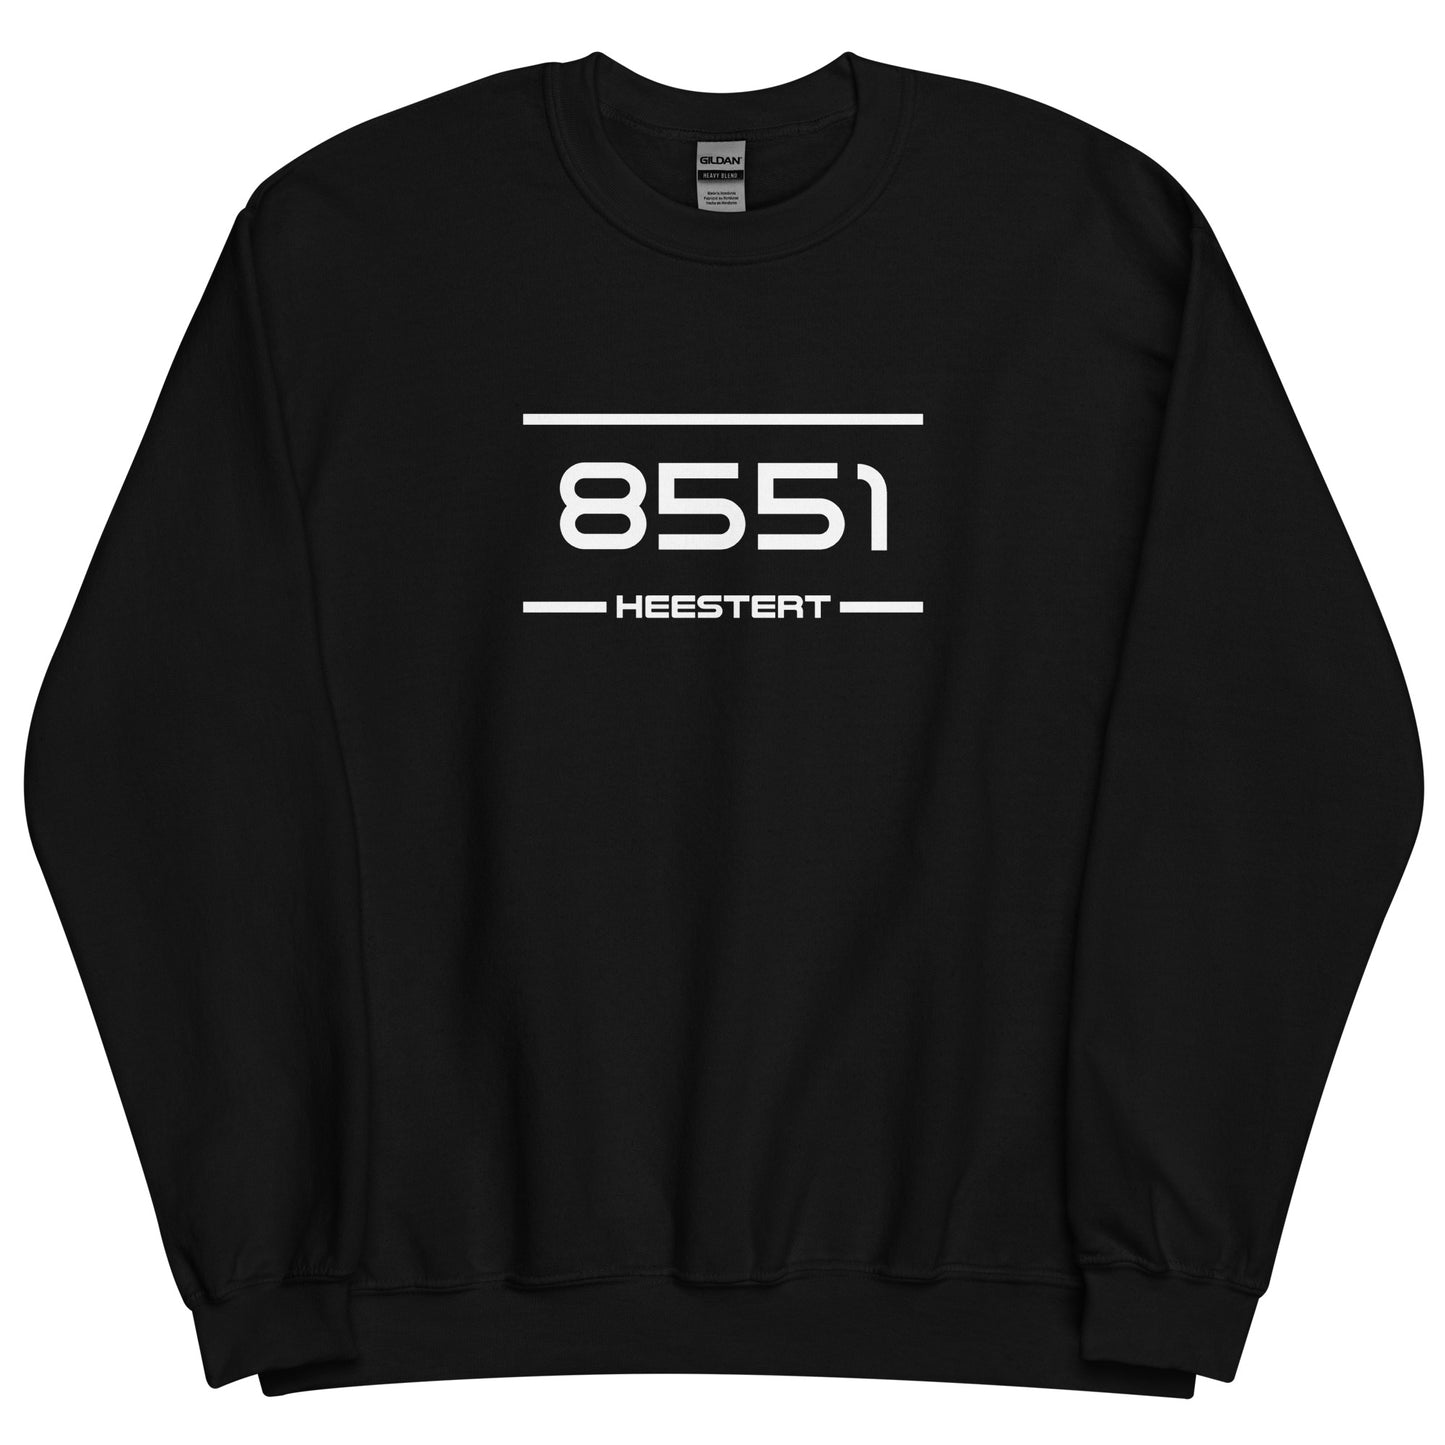 Sweater - 8551 - Heestert (M/V)